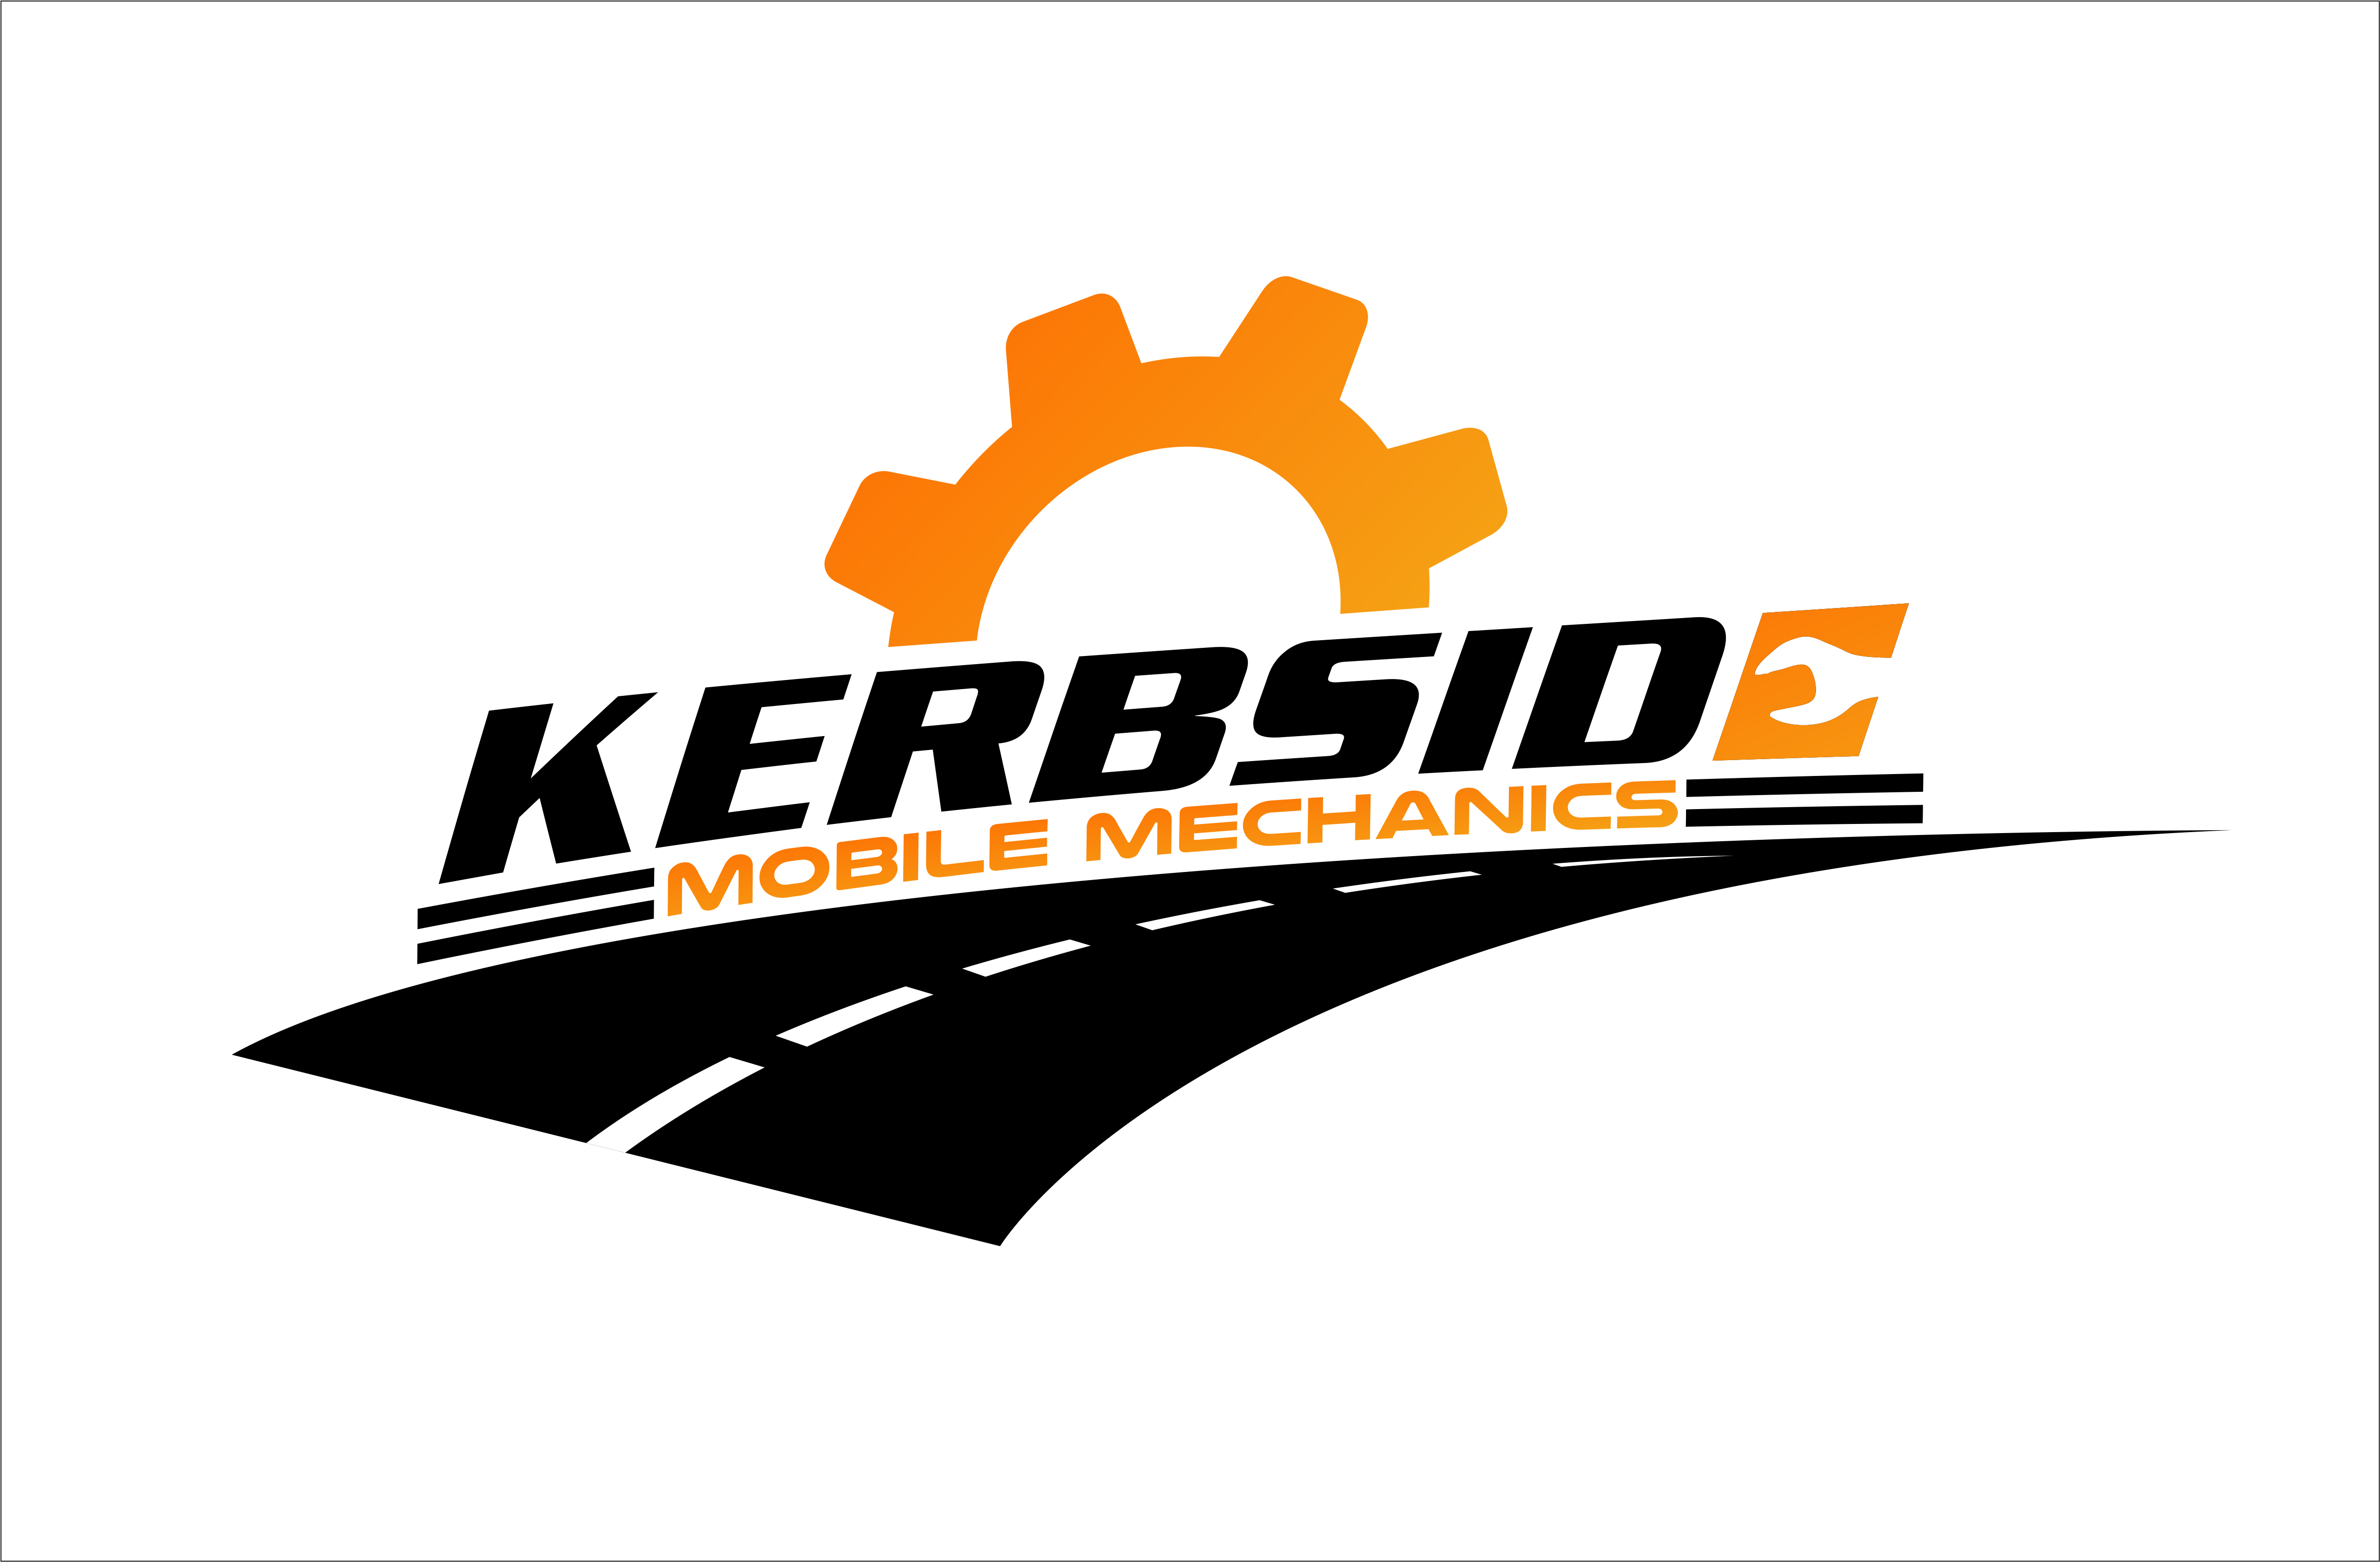 Kerbside Mobile Mechanics Sydney - Hills District